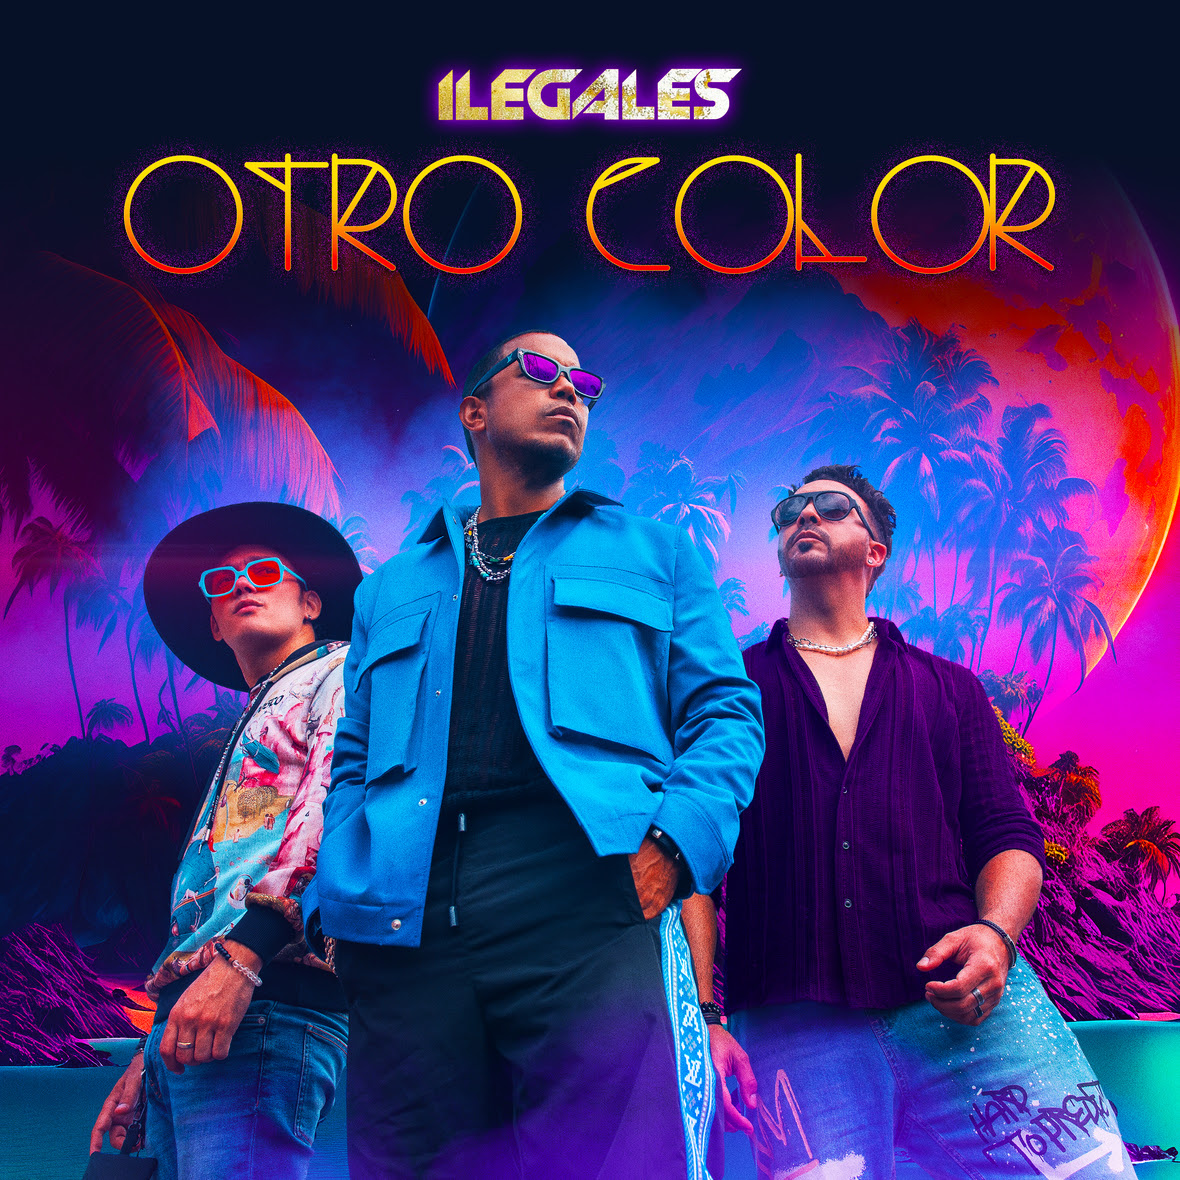 Ilegales le ponen "Otro Color" a su música